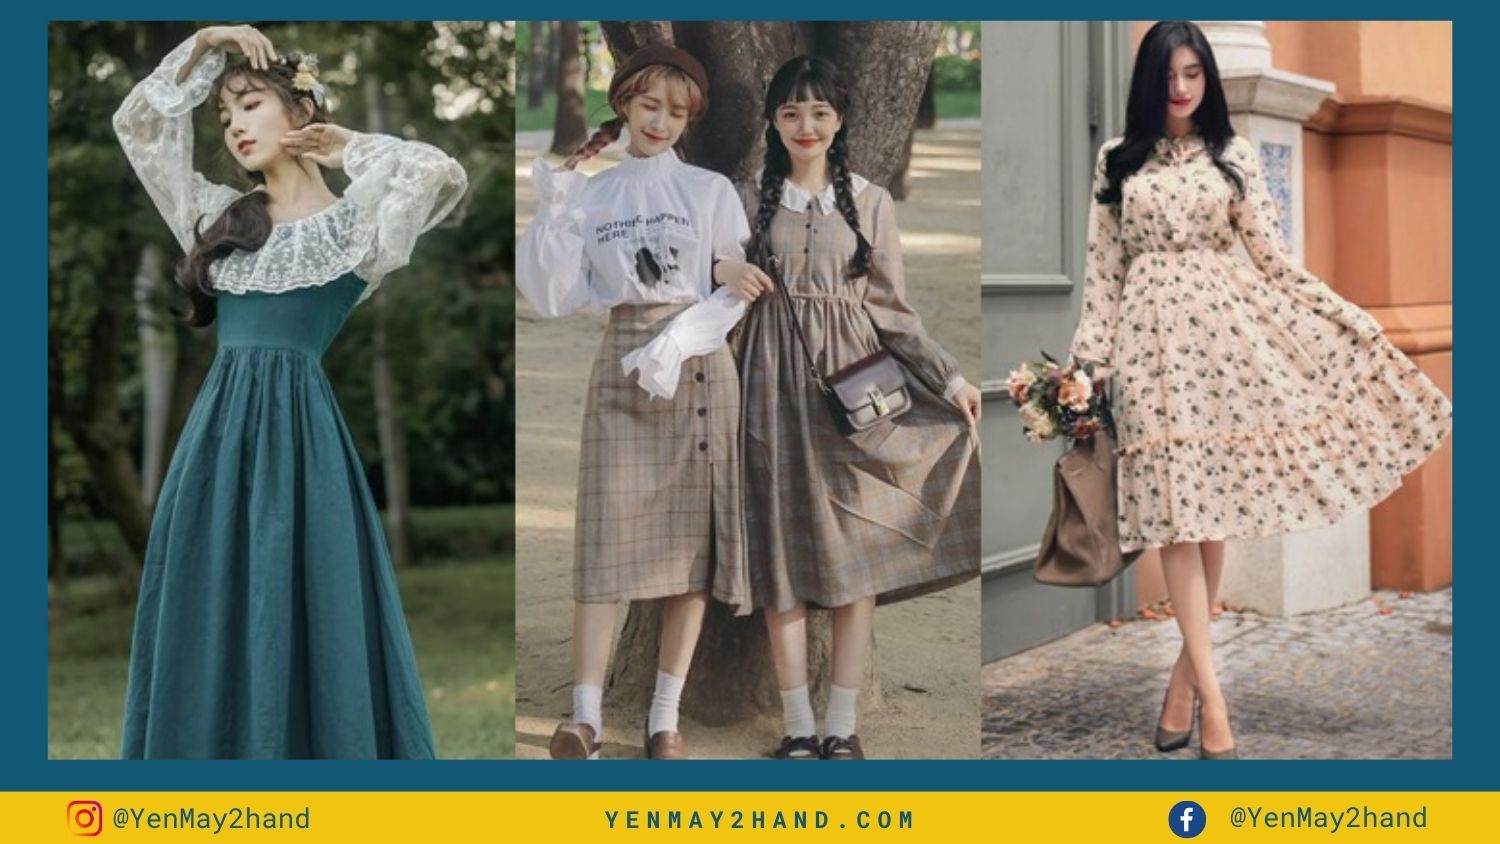 Phong cách vintage là gì? Gợi ý phối đồ vintage thời trang cho bạn gái